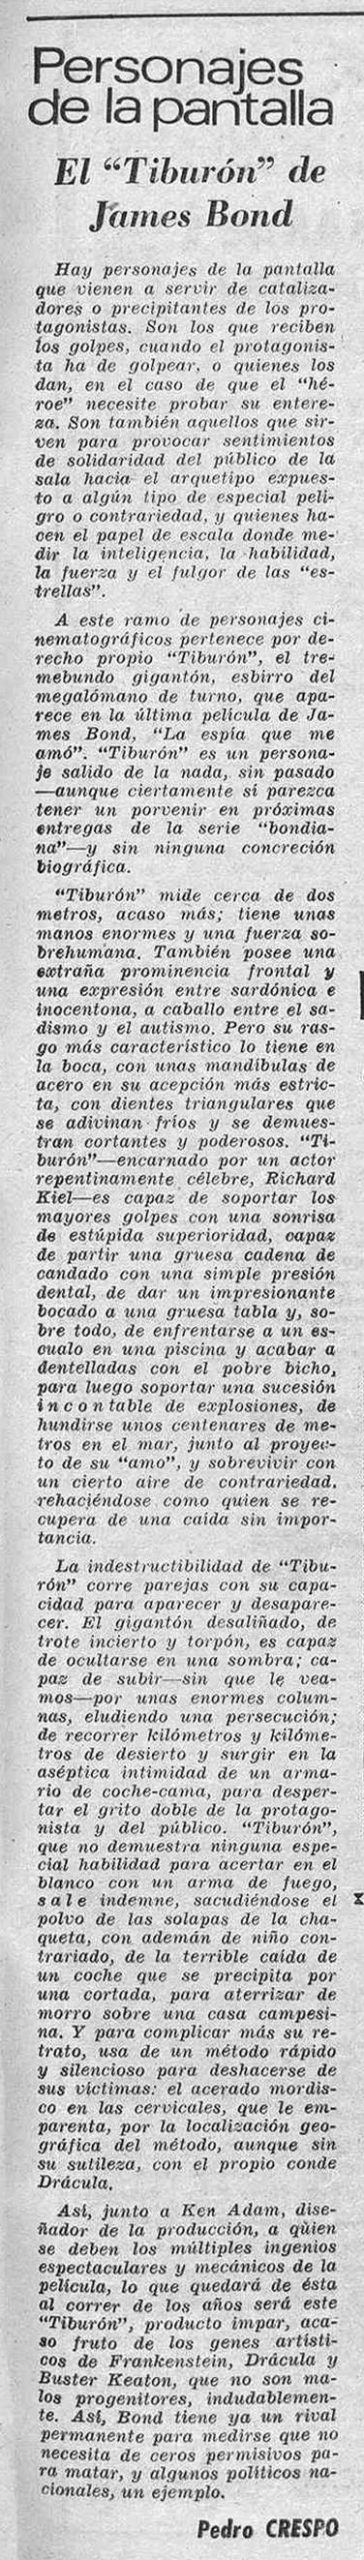 10 1978 01 16 Hoja del Lunes de Madrid Tiburon scaled